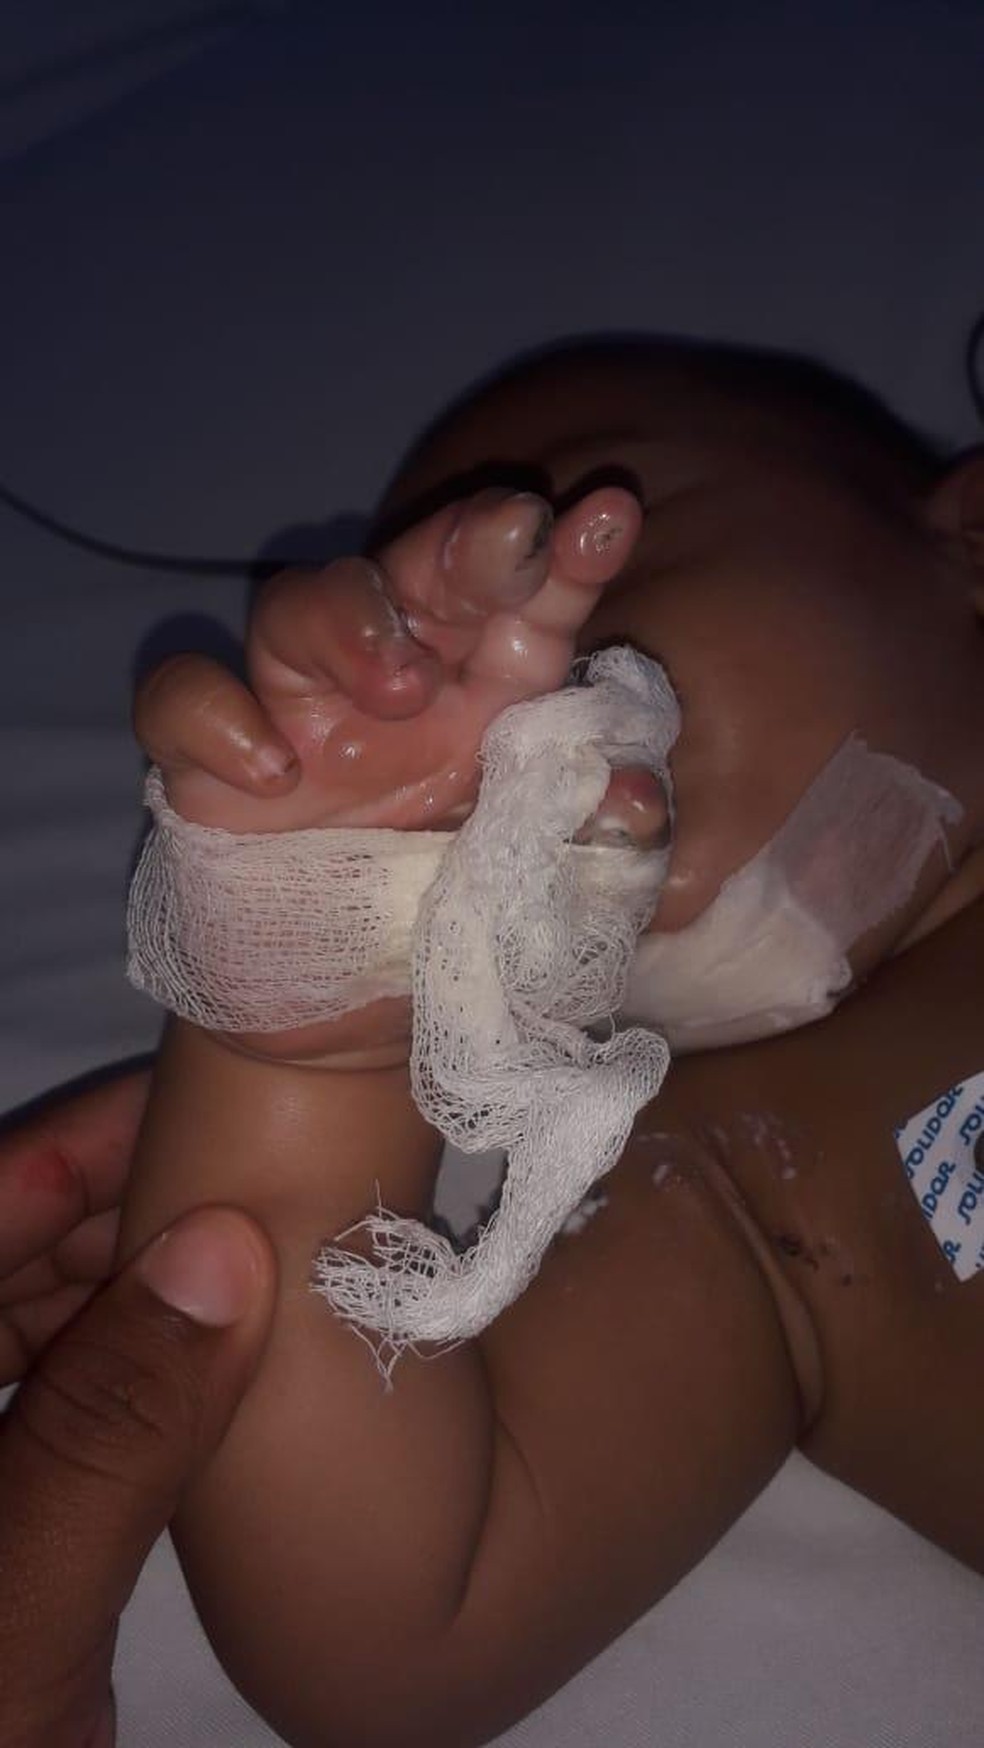 Bebê teria colocado conector de carregador na boca — Foto: Divulgação